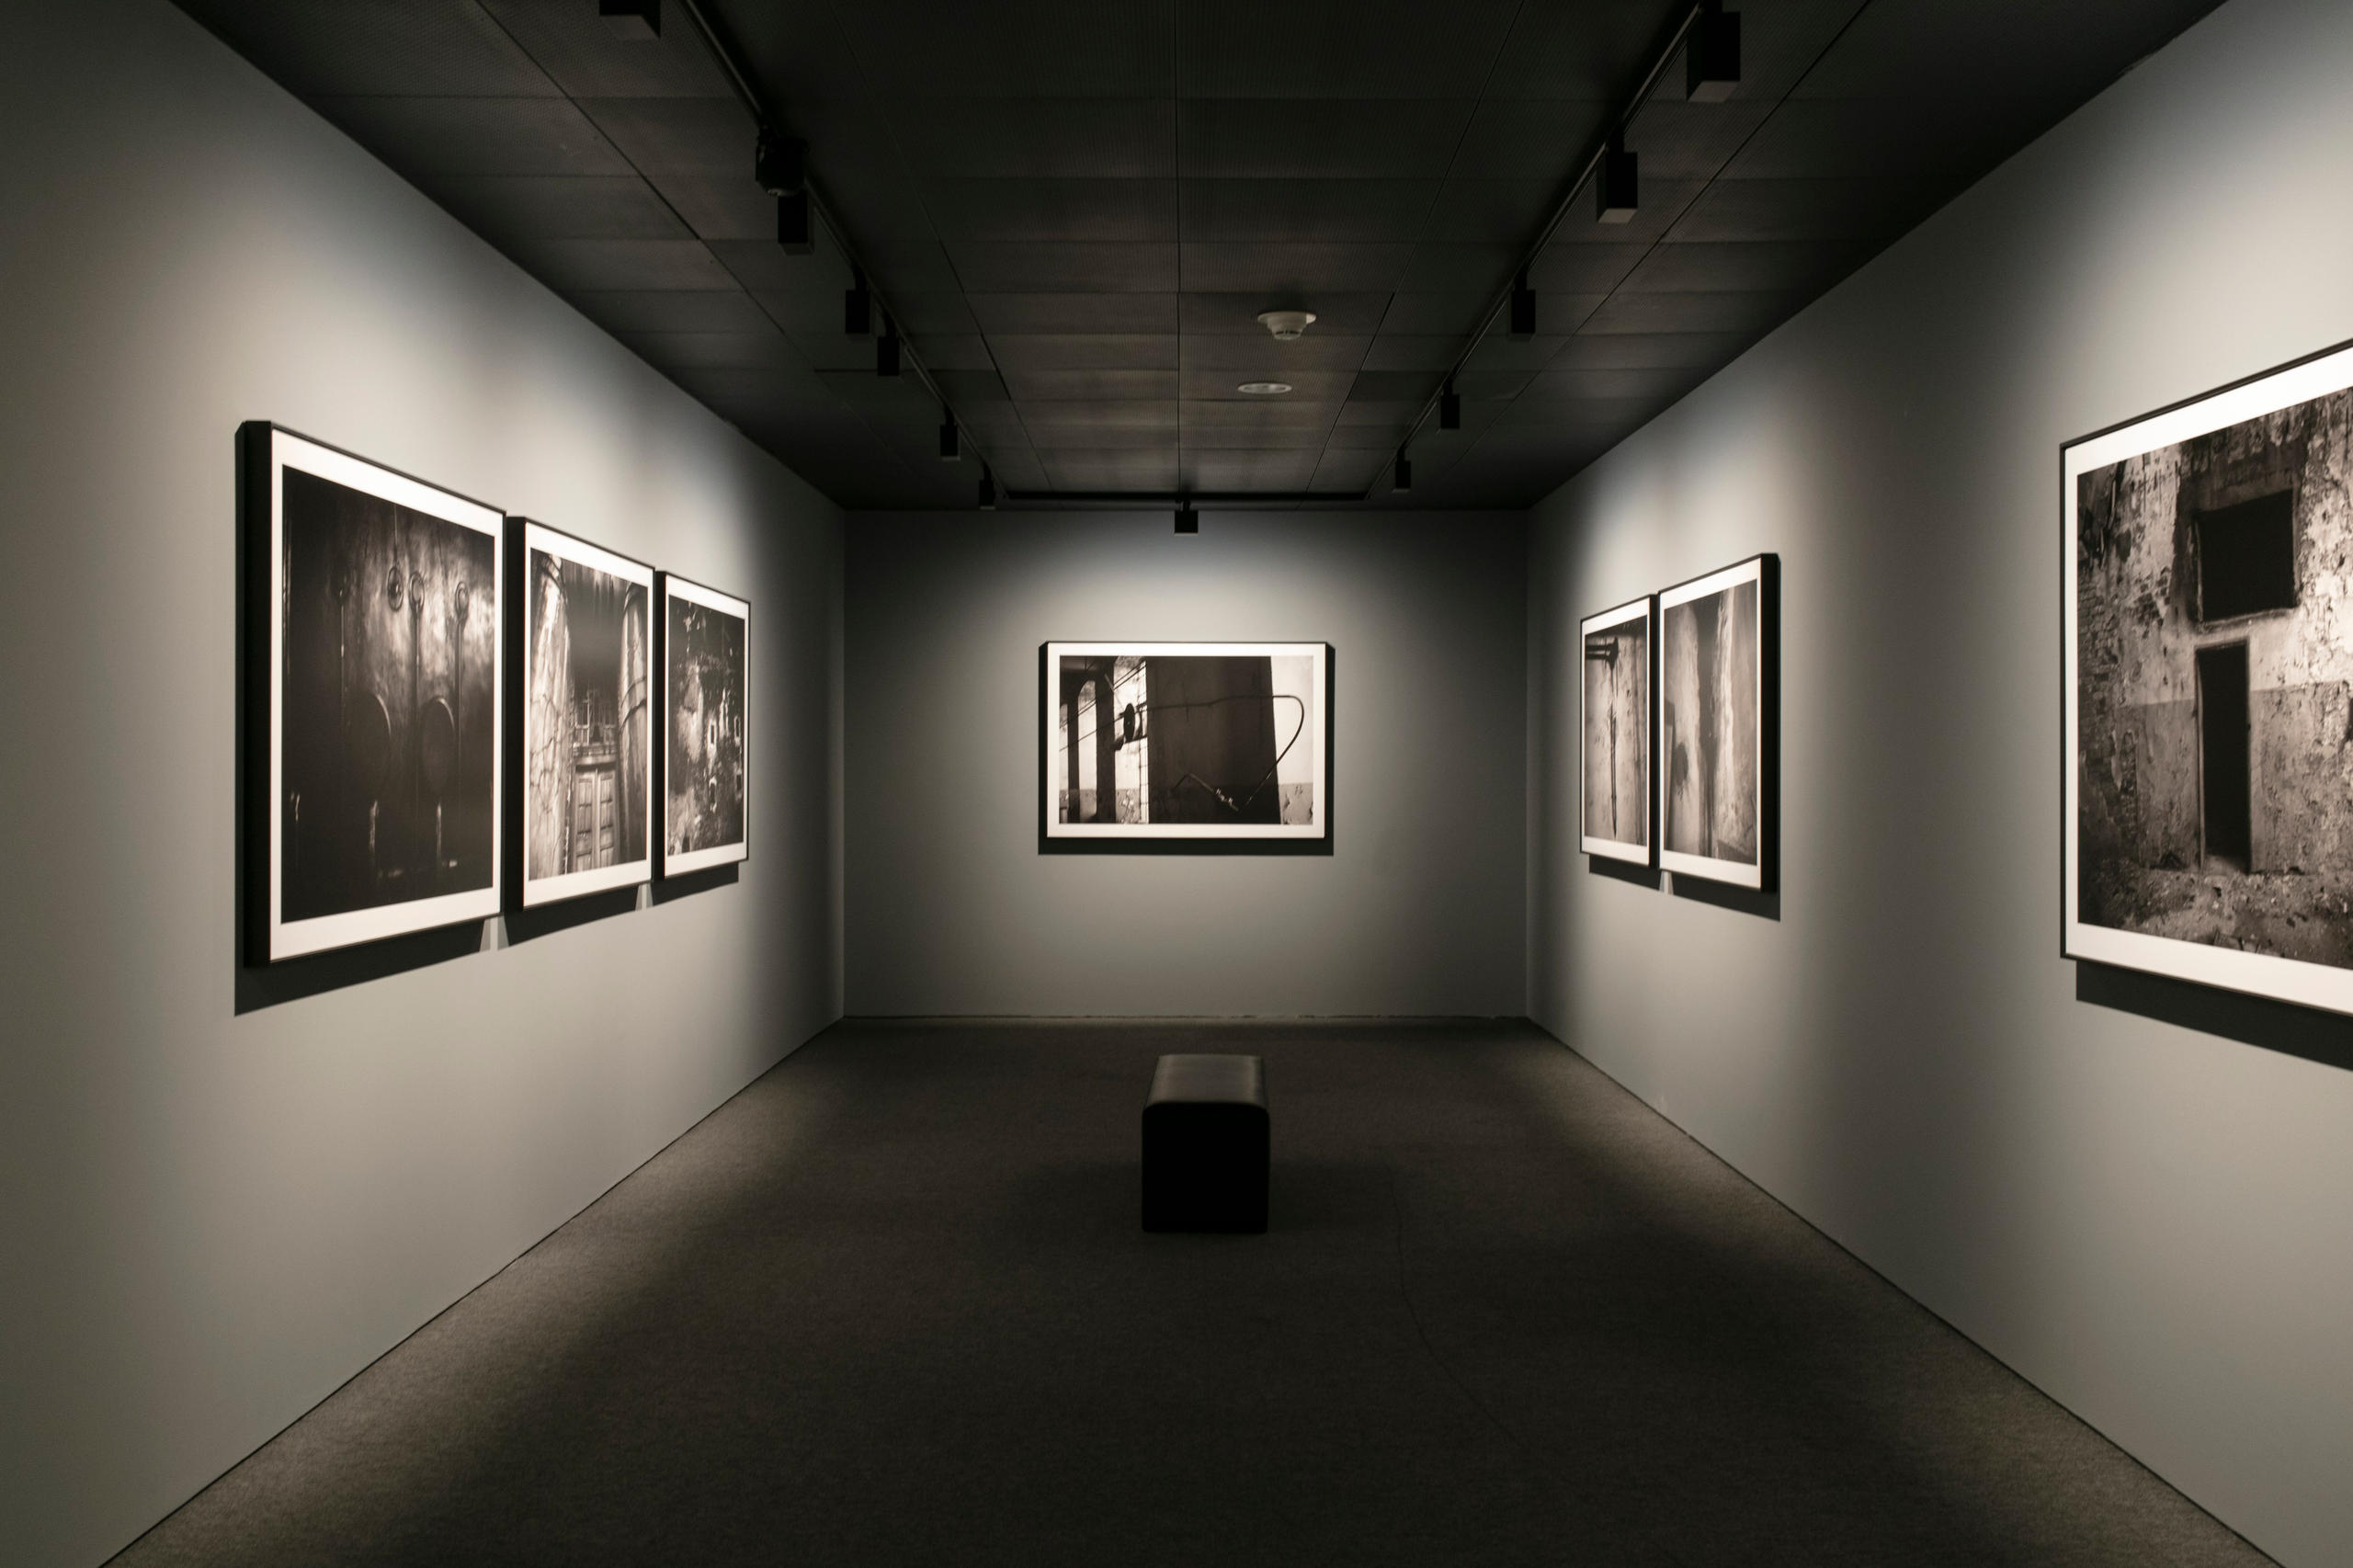 صور فوتوغرافية معروضة على جدران قاعة داخل متحف